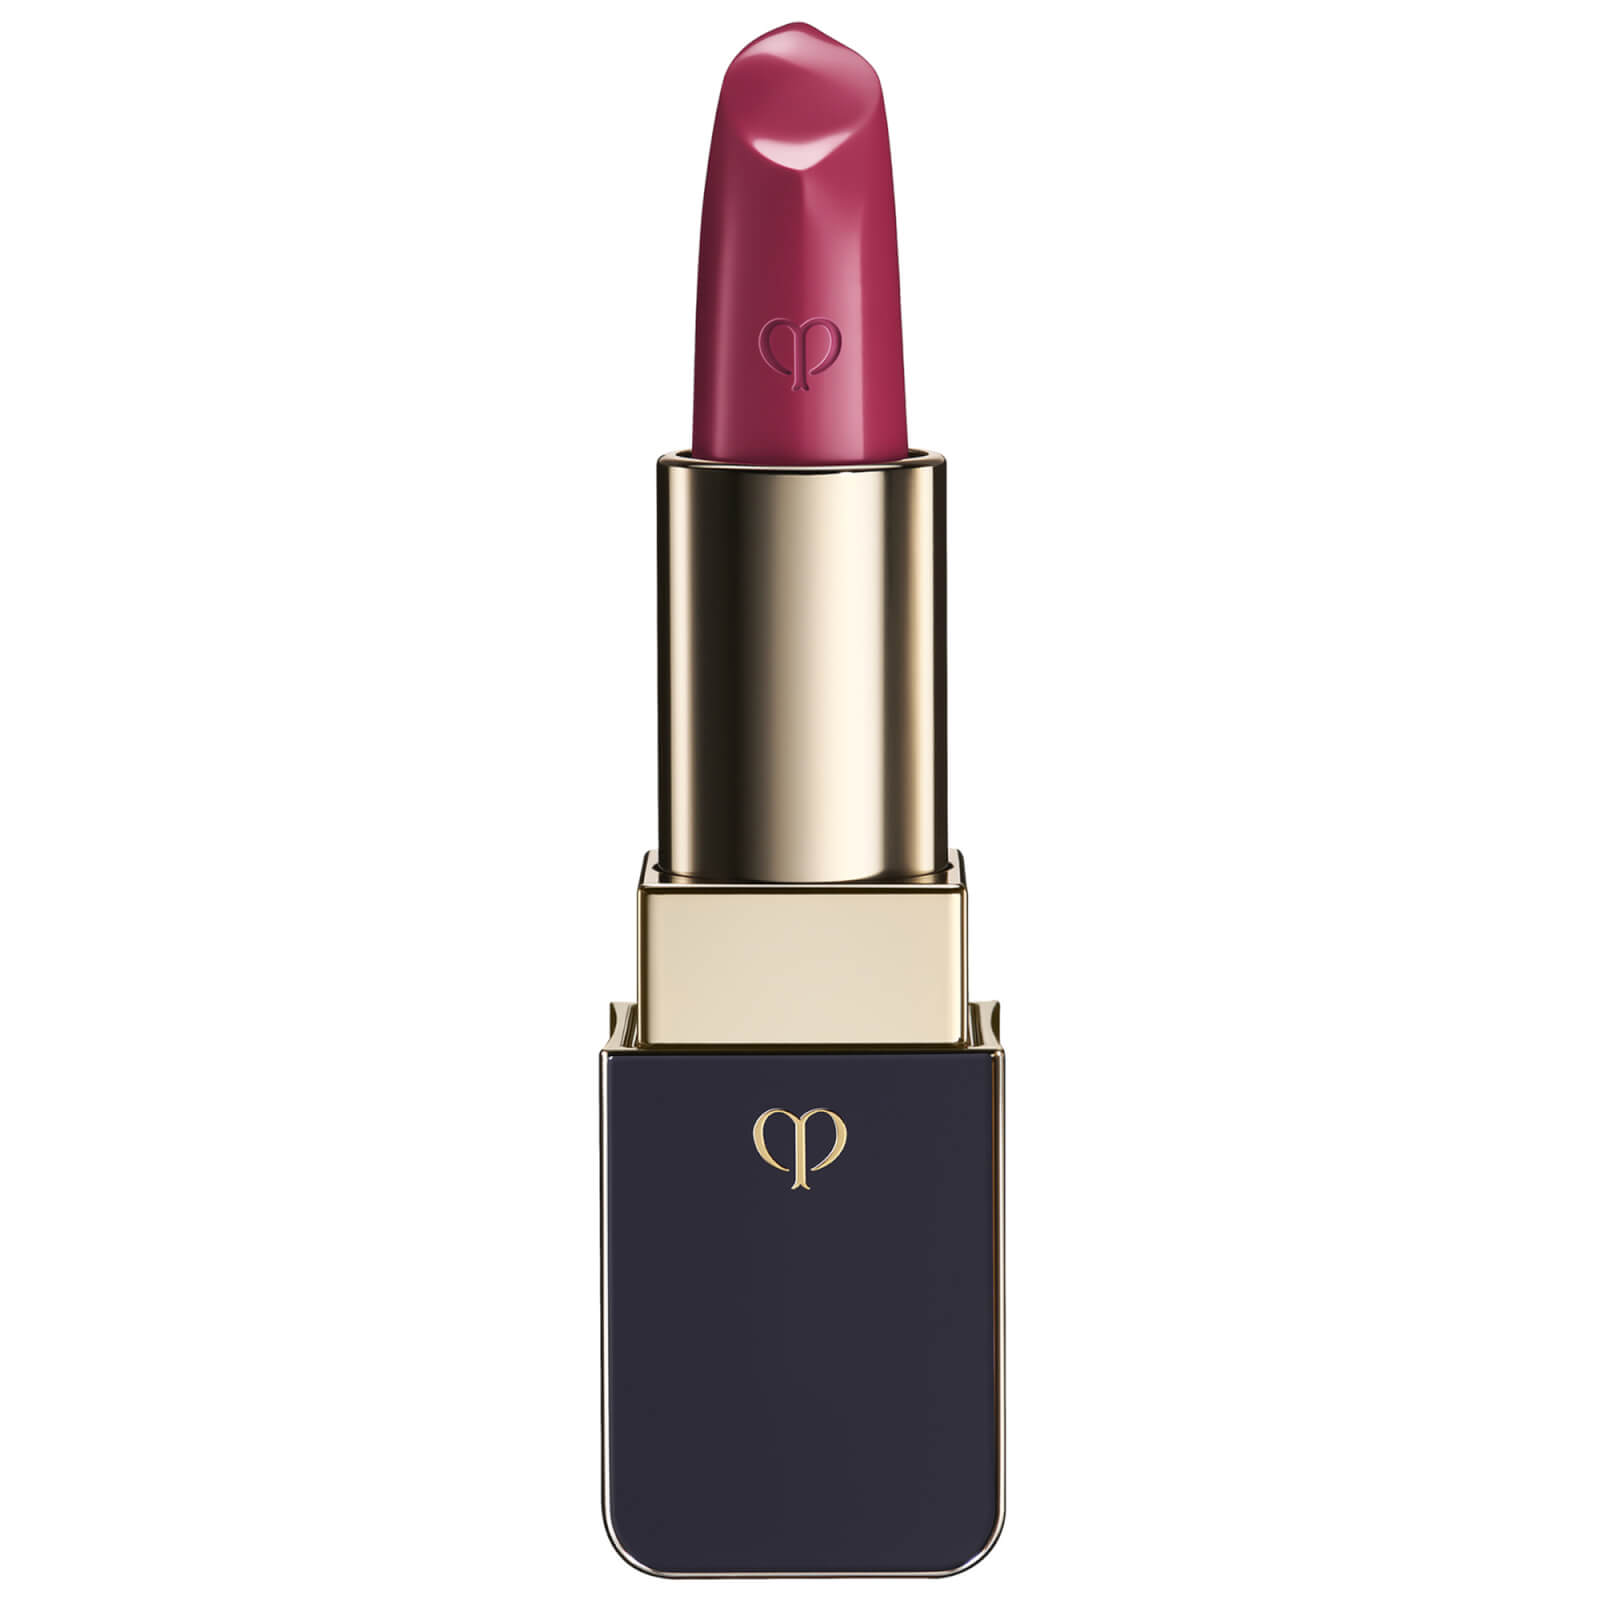 Clé de Peau Beauté Lipstick 4g (Various Shades) - 21 Raspberry Radiance